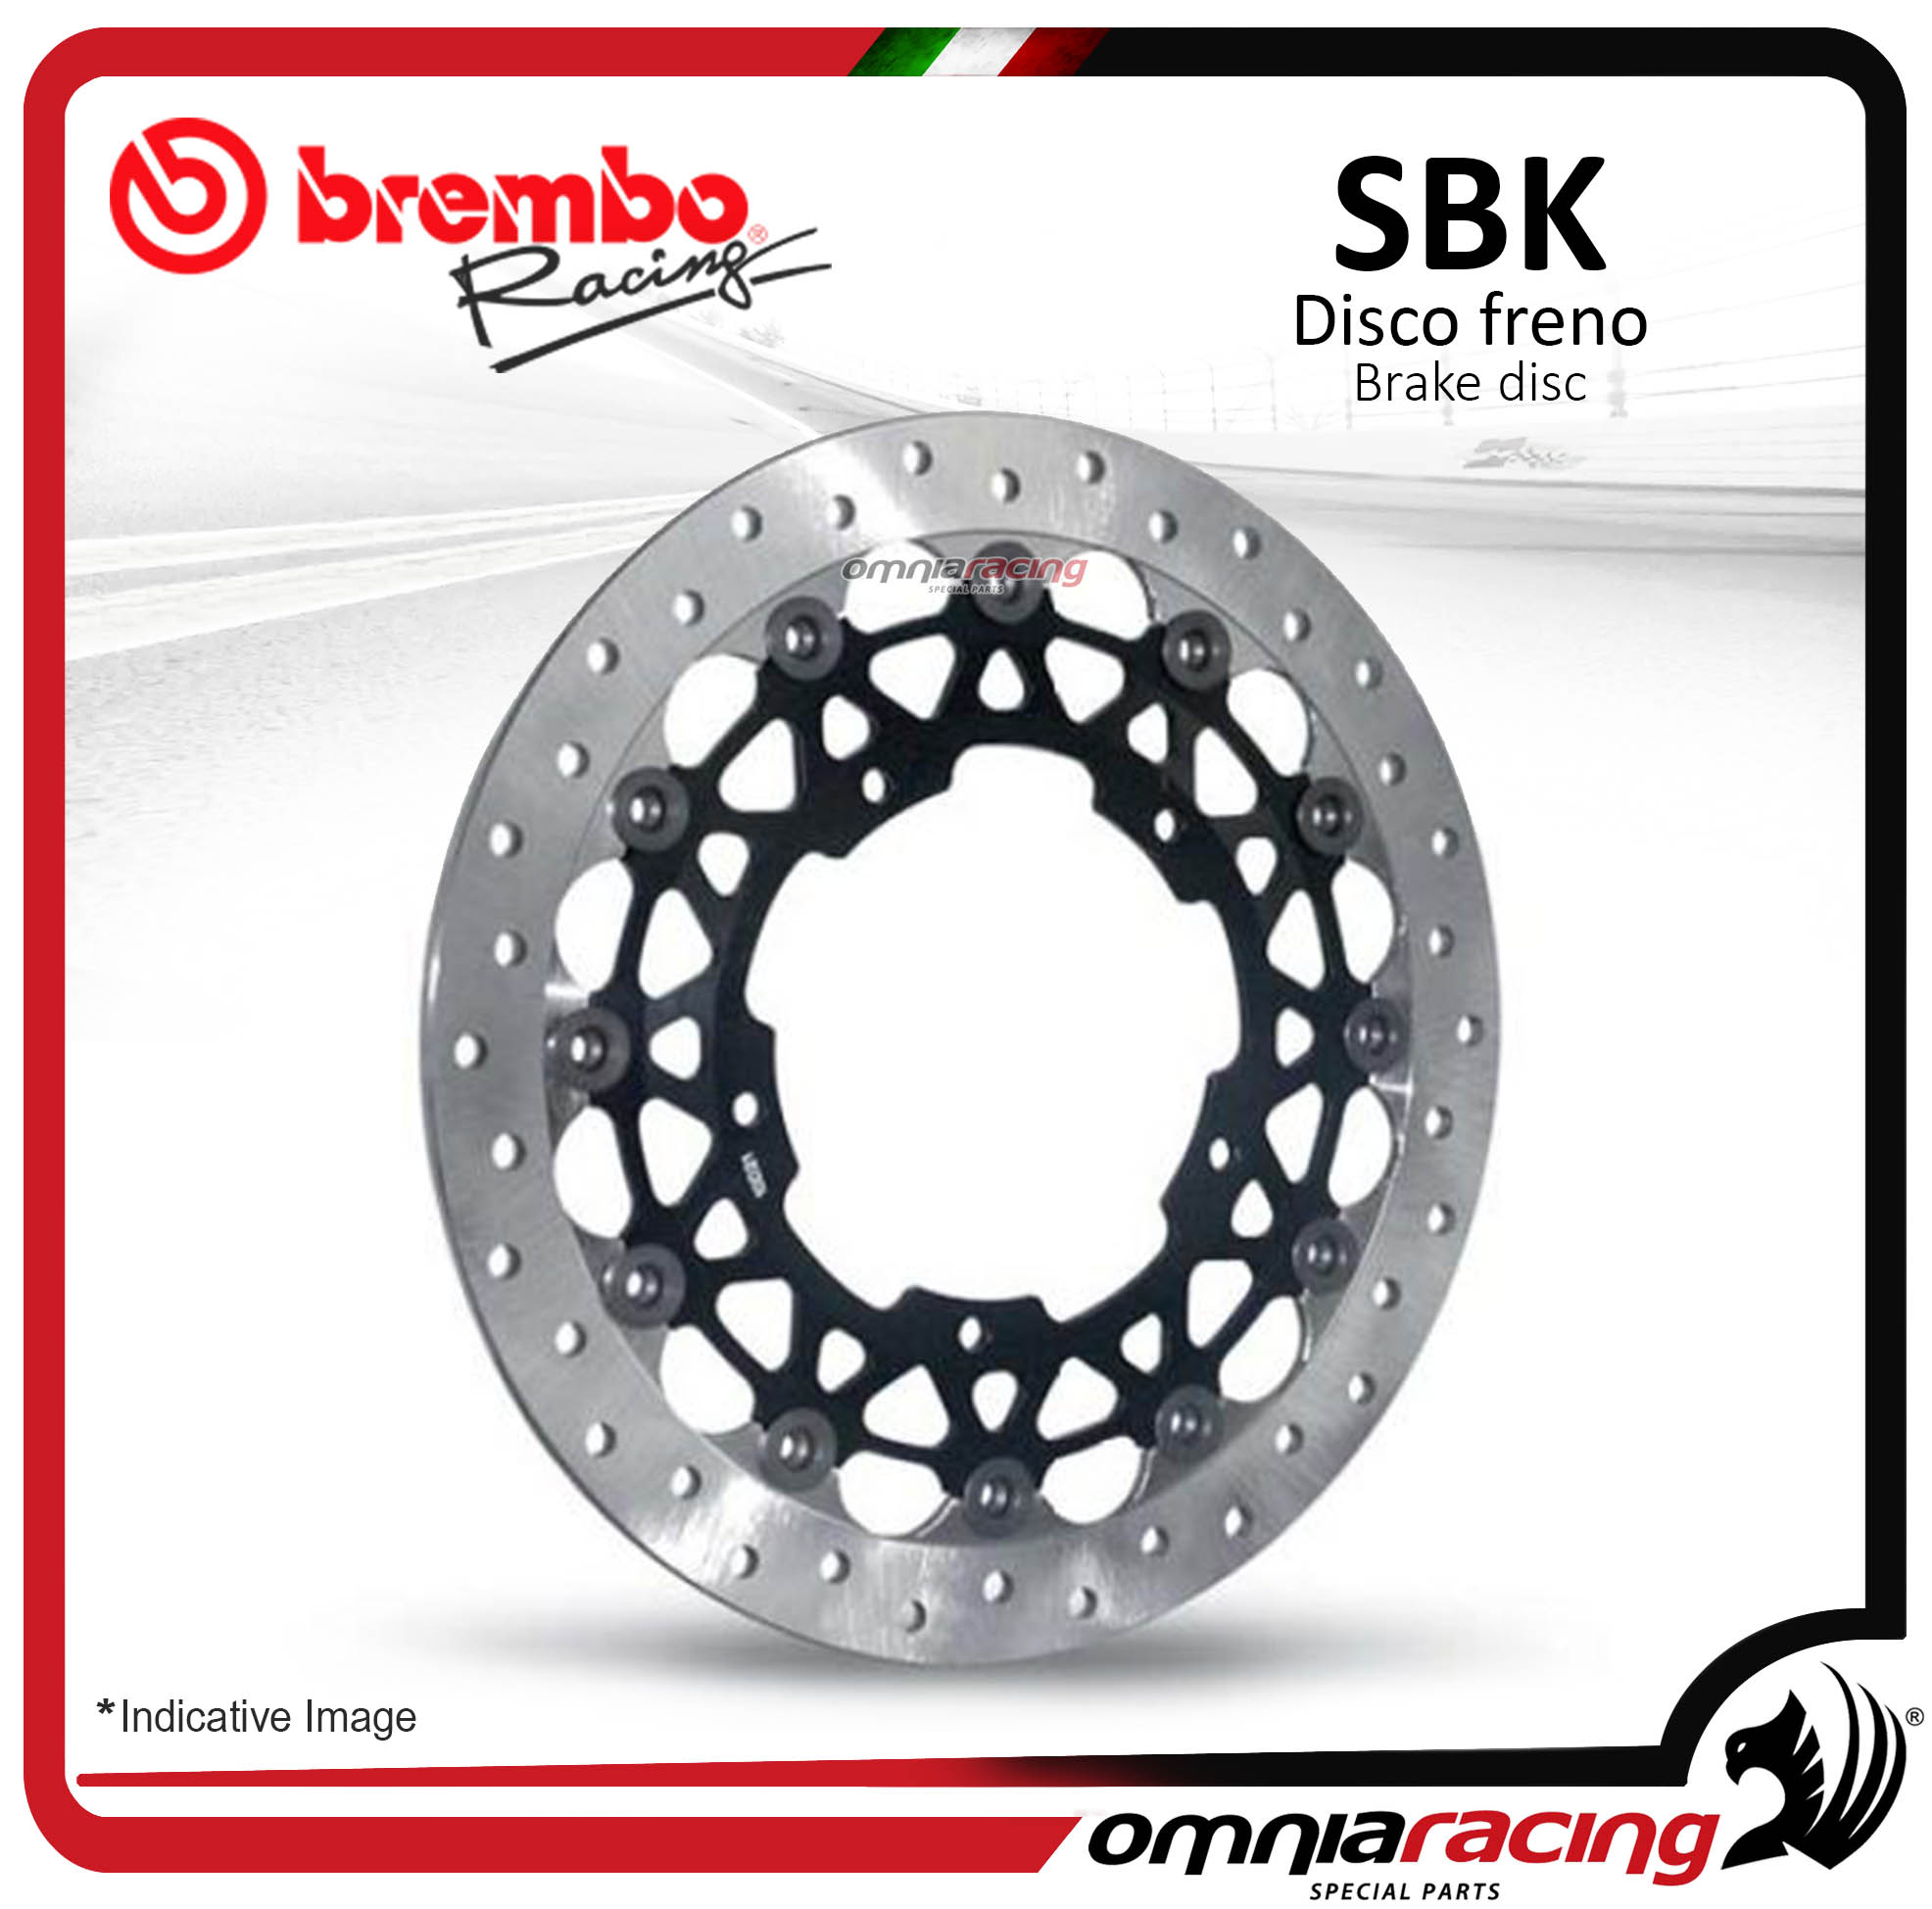 Disco Freno SBK Brembo Racing Fascia Frenante 30mm spessore 6mm Ducati 5 fori 72x90